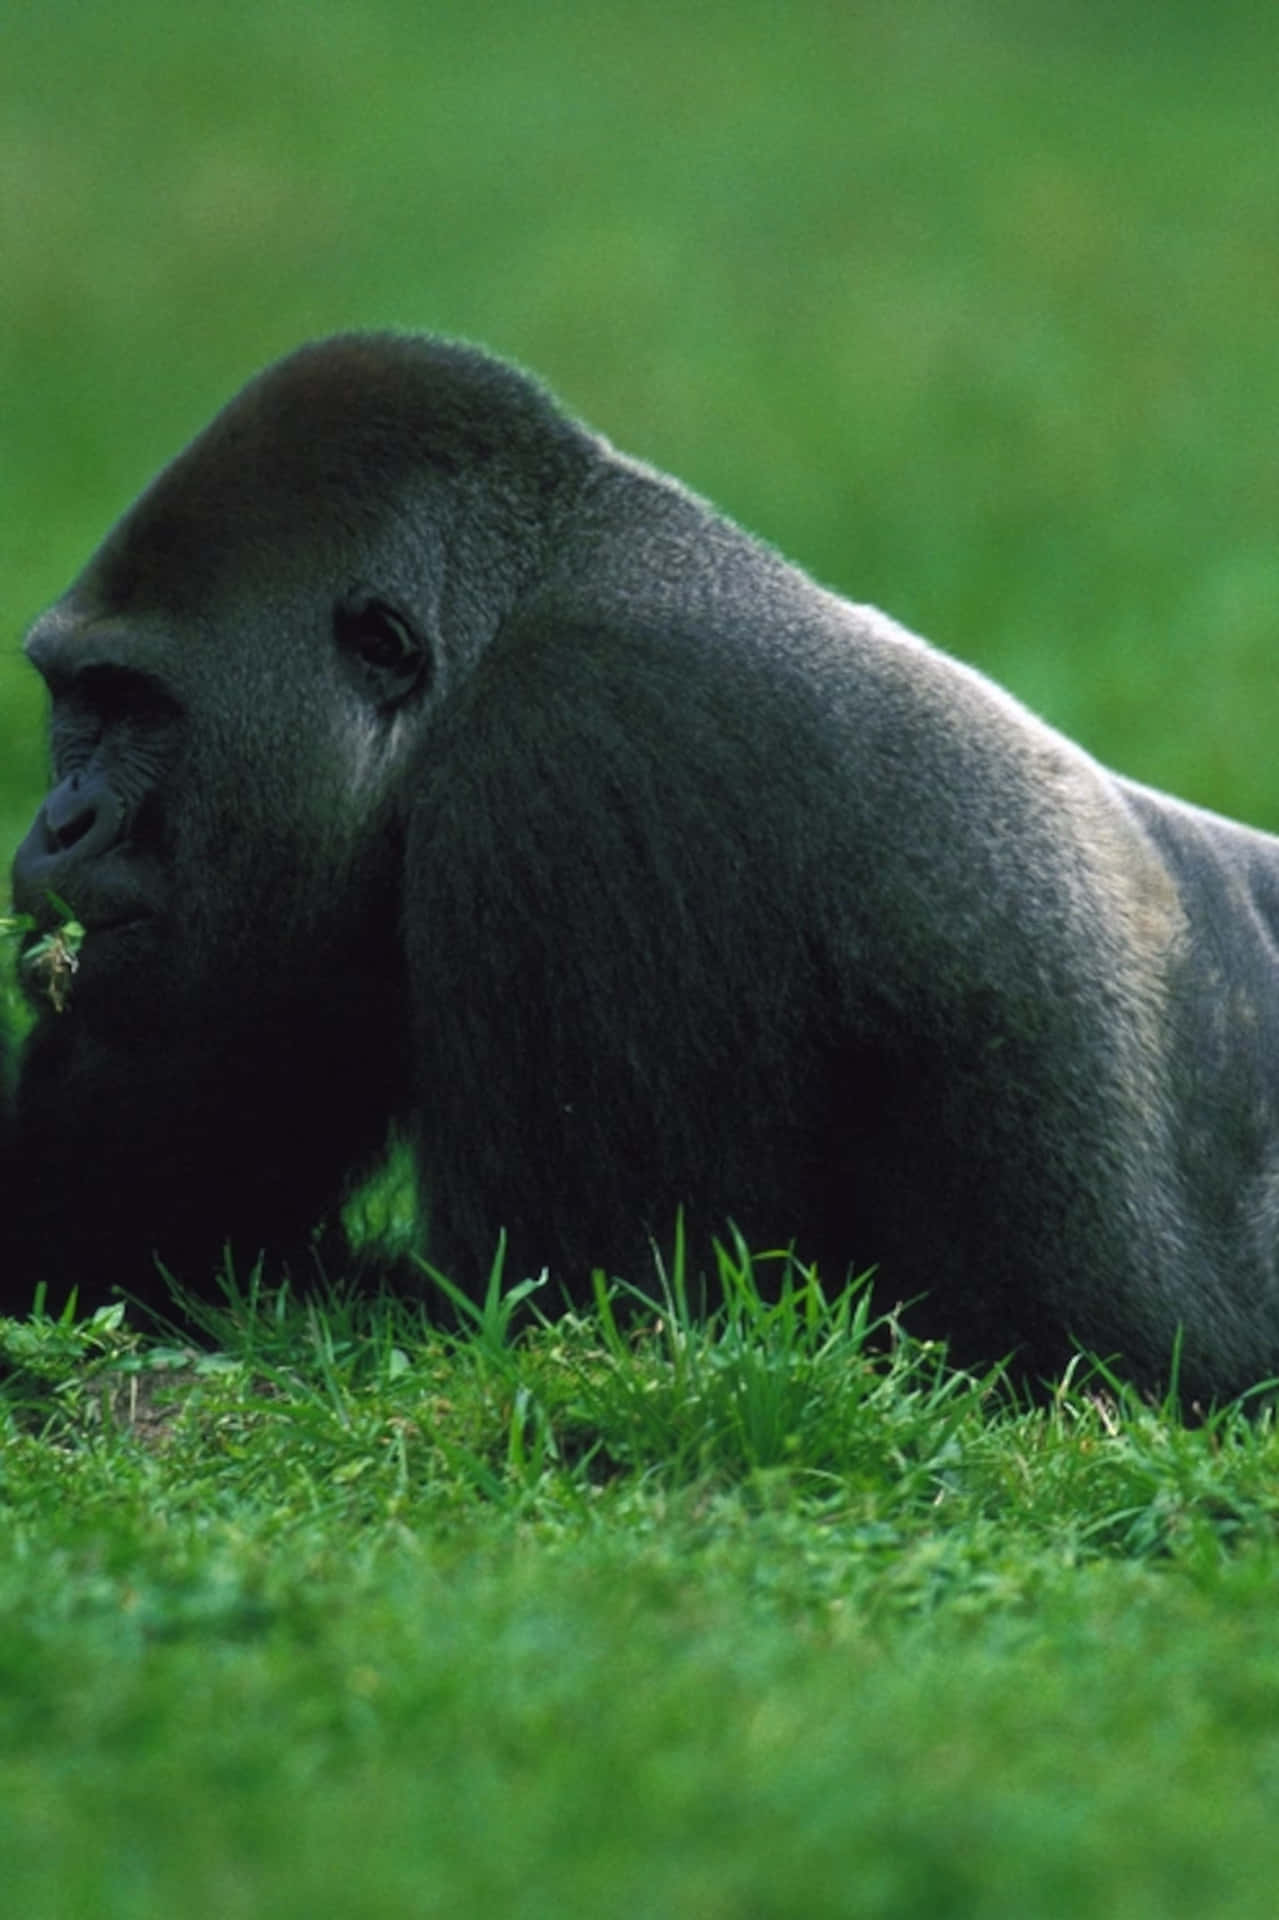 Caption: Majestic Gorilla In Natural Habitat